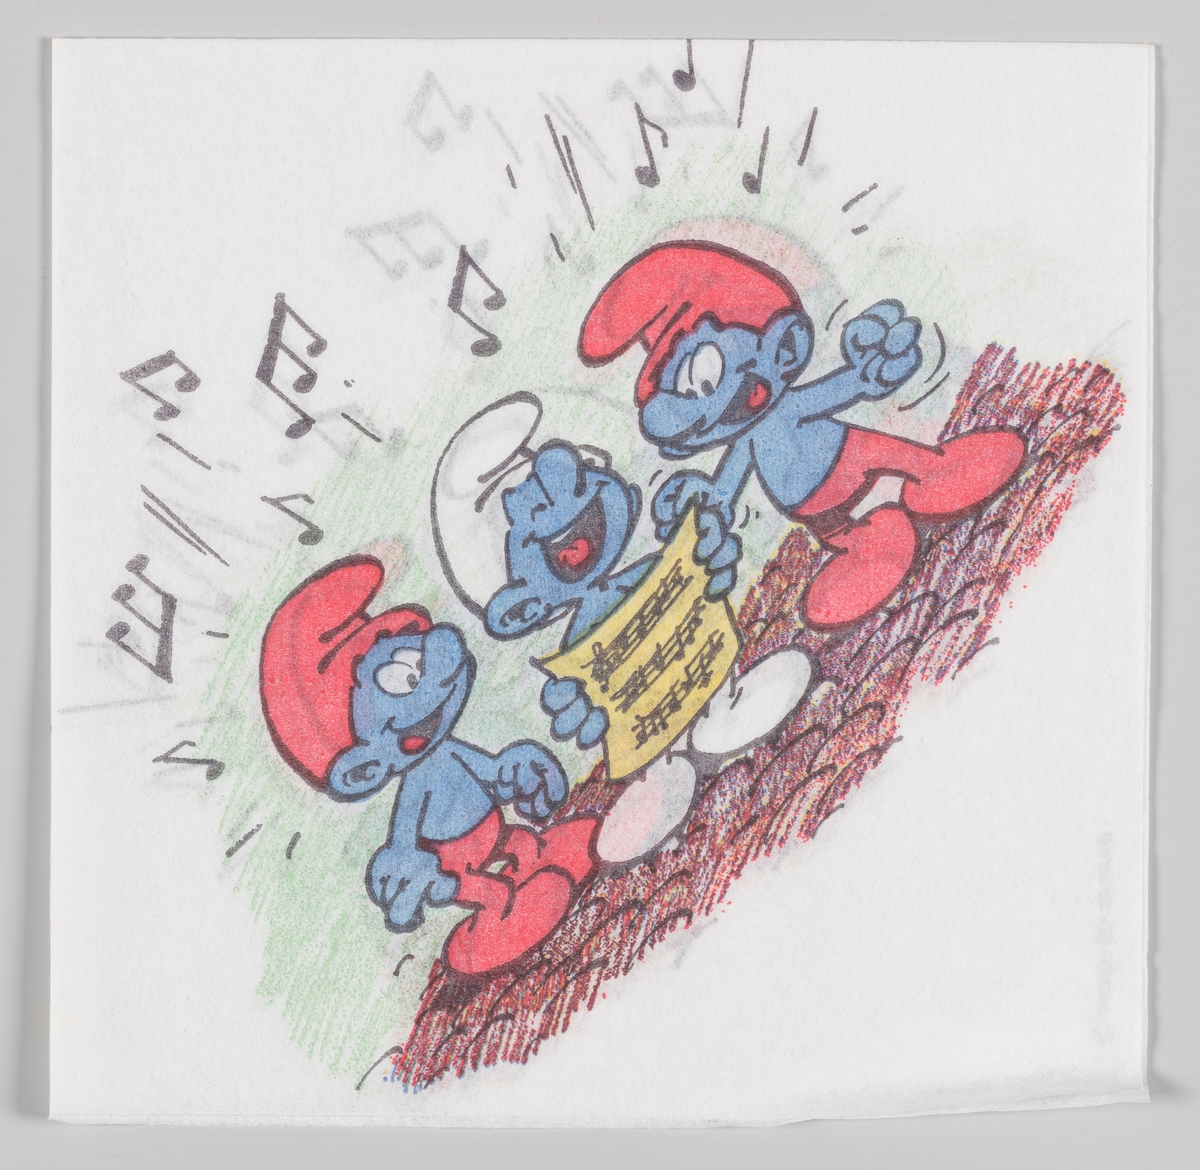 Tre smurfer står og synger fra et noteark.

Smurfene er en tegneserie for barn, skapt i 1958 av den belgiske tegneren og manusforfatteren Pierre Culliford, kjent under signaturen Peyo. Smurfene er blitt utgitt i Norge fra 1974.